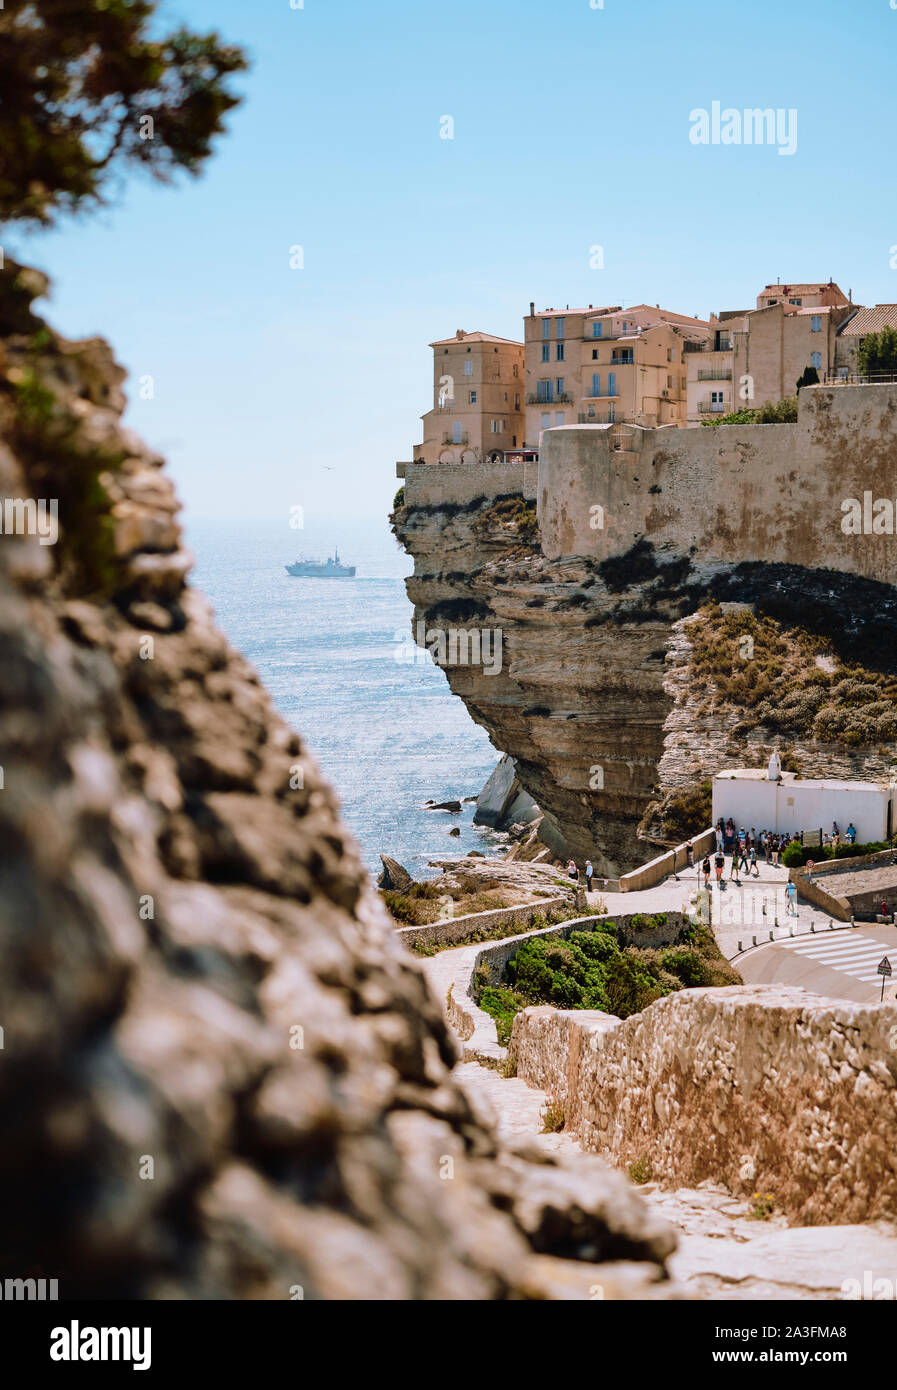 La falaise calcaire ville citadelle et ferry de Bonifacio à la pointe sud de l'île française de Corse - Corse du Sud France. Banque D'Images